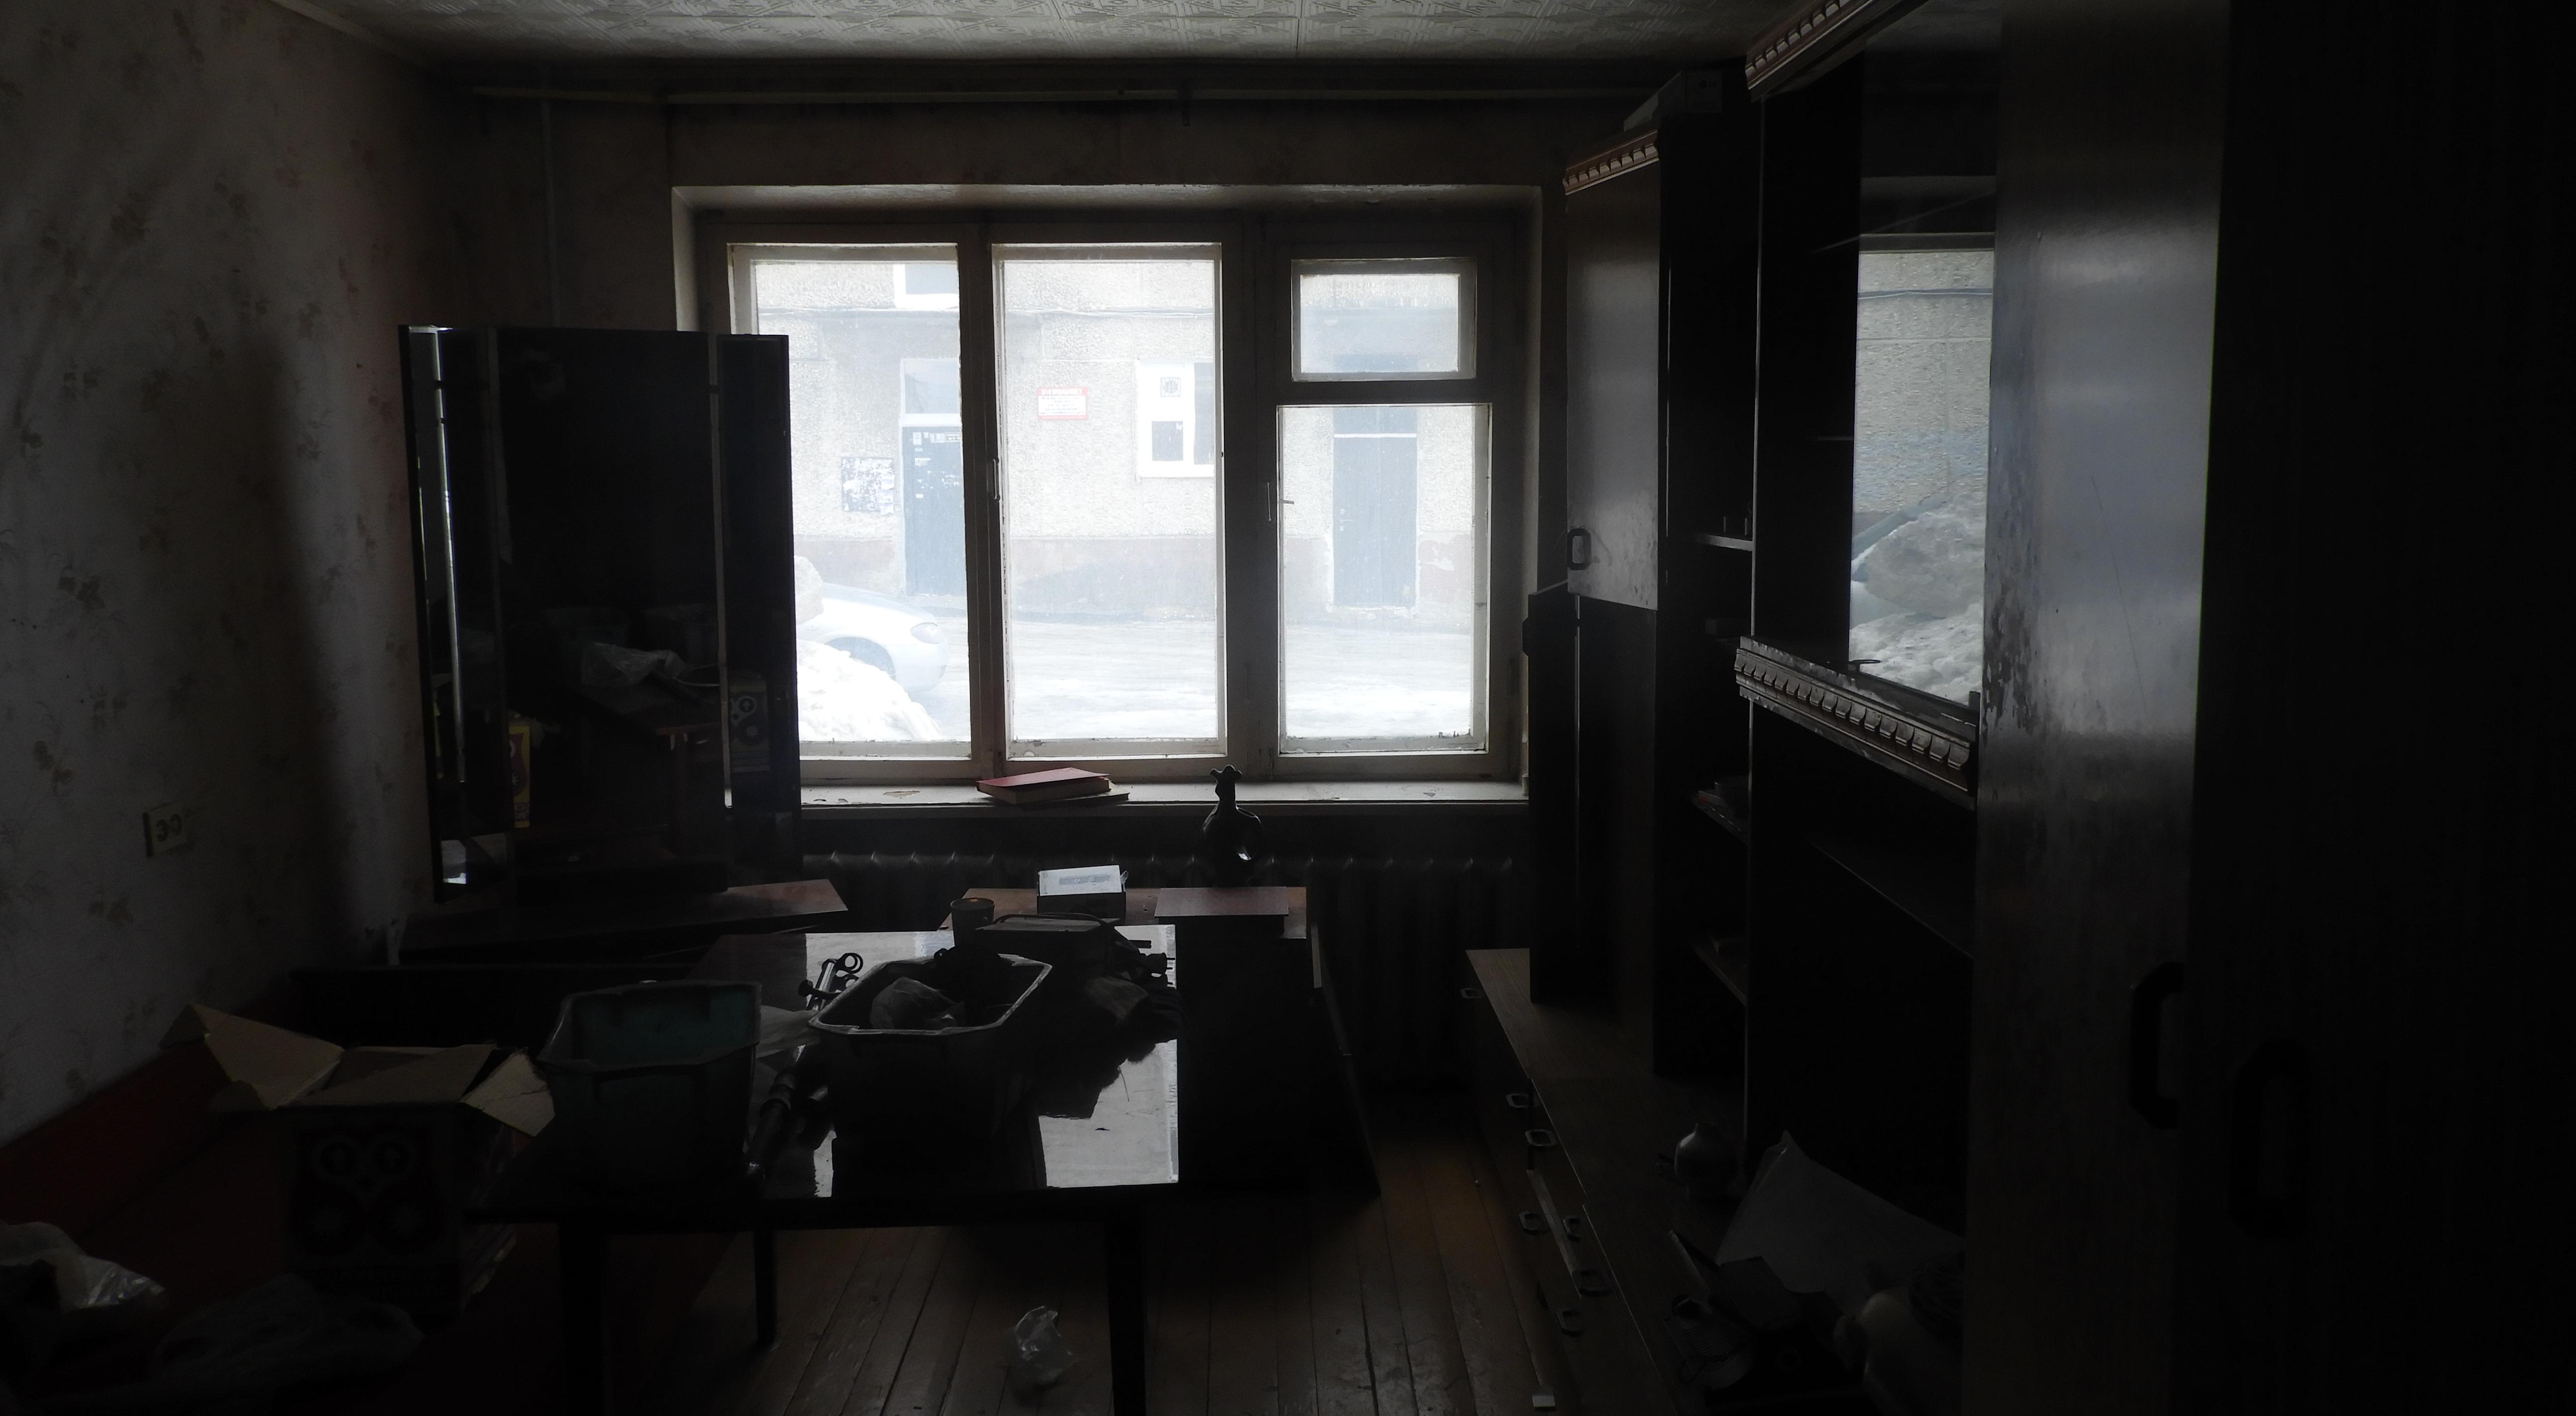 Директор УКХ прокомментировал жалобу жильцов на пустую квартиру